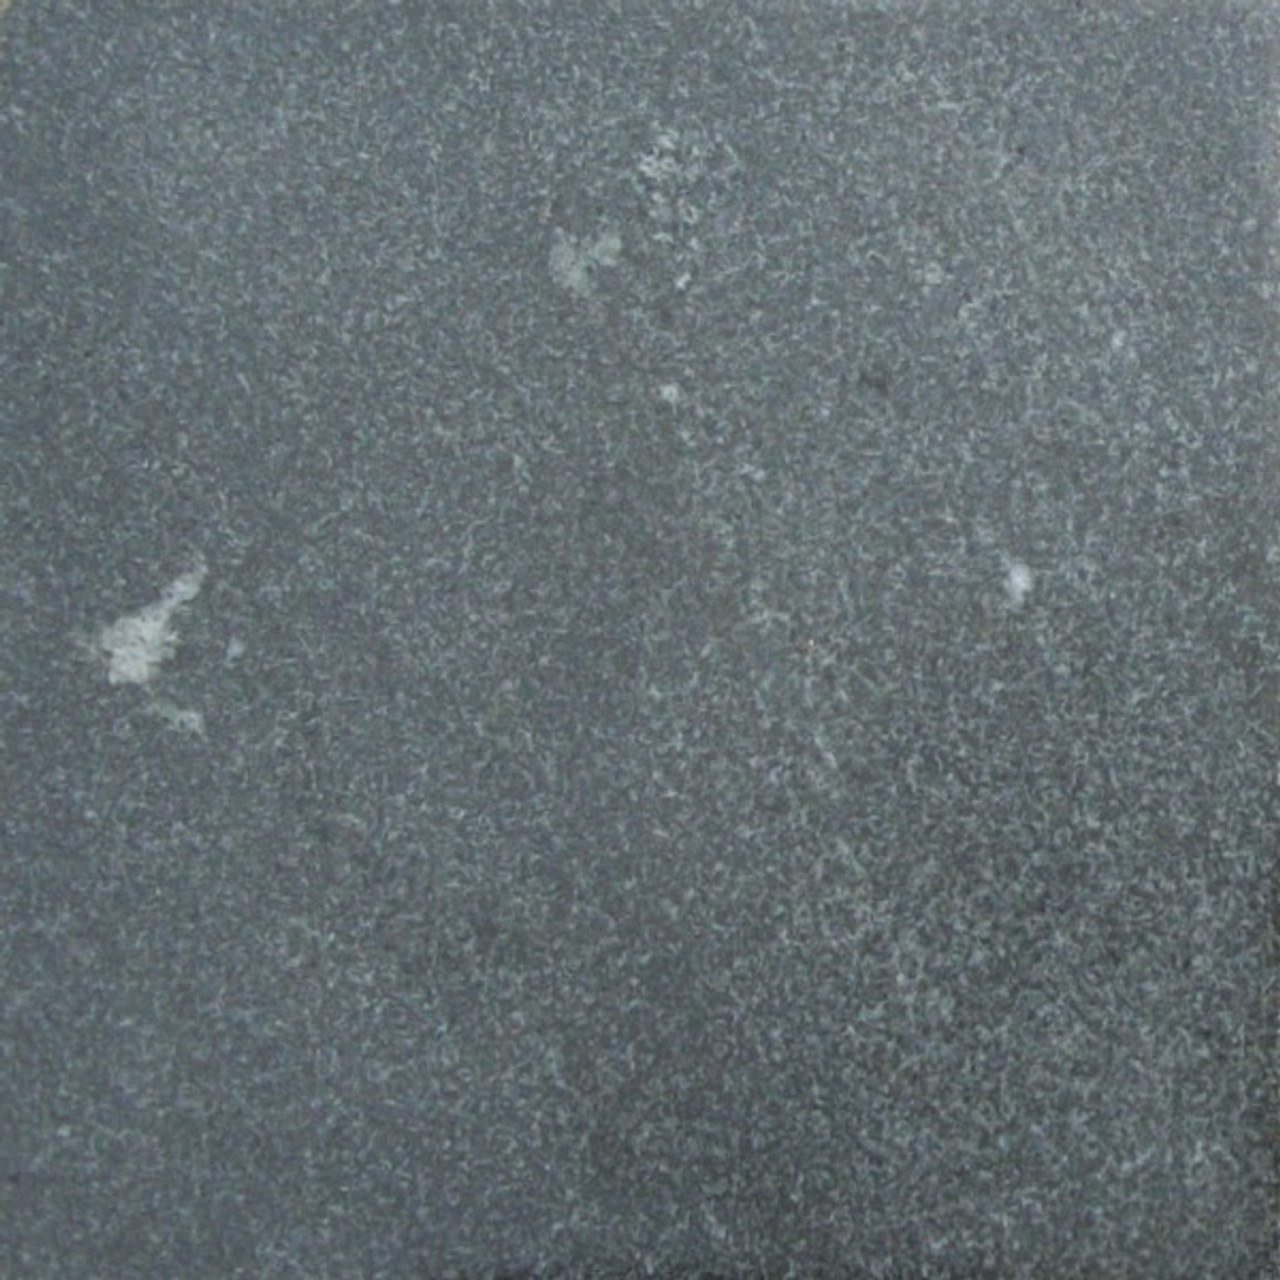 Elberton Gray Granite Sample - Honed/Sand Blasted - Easy Stone Center